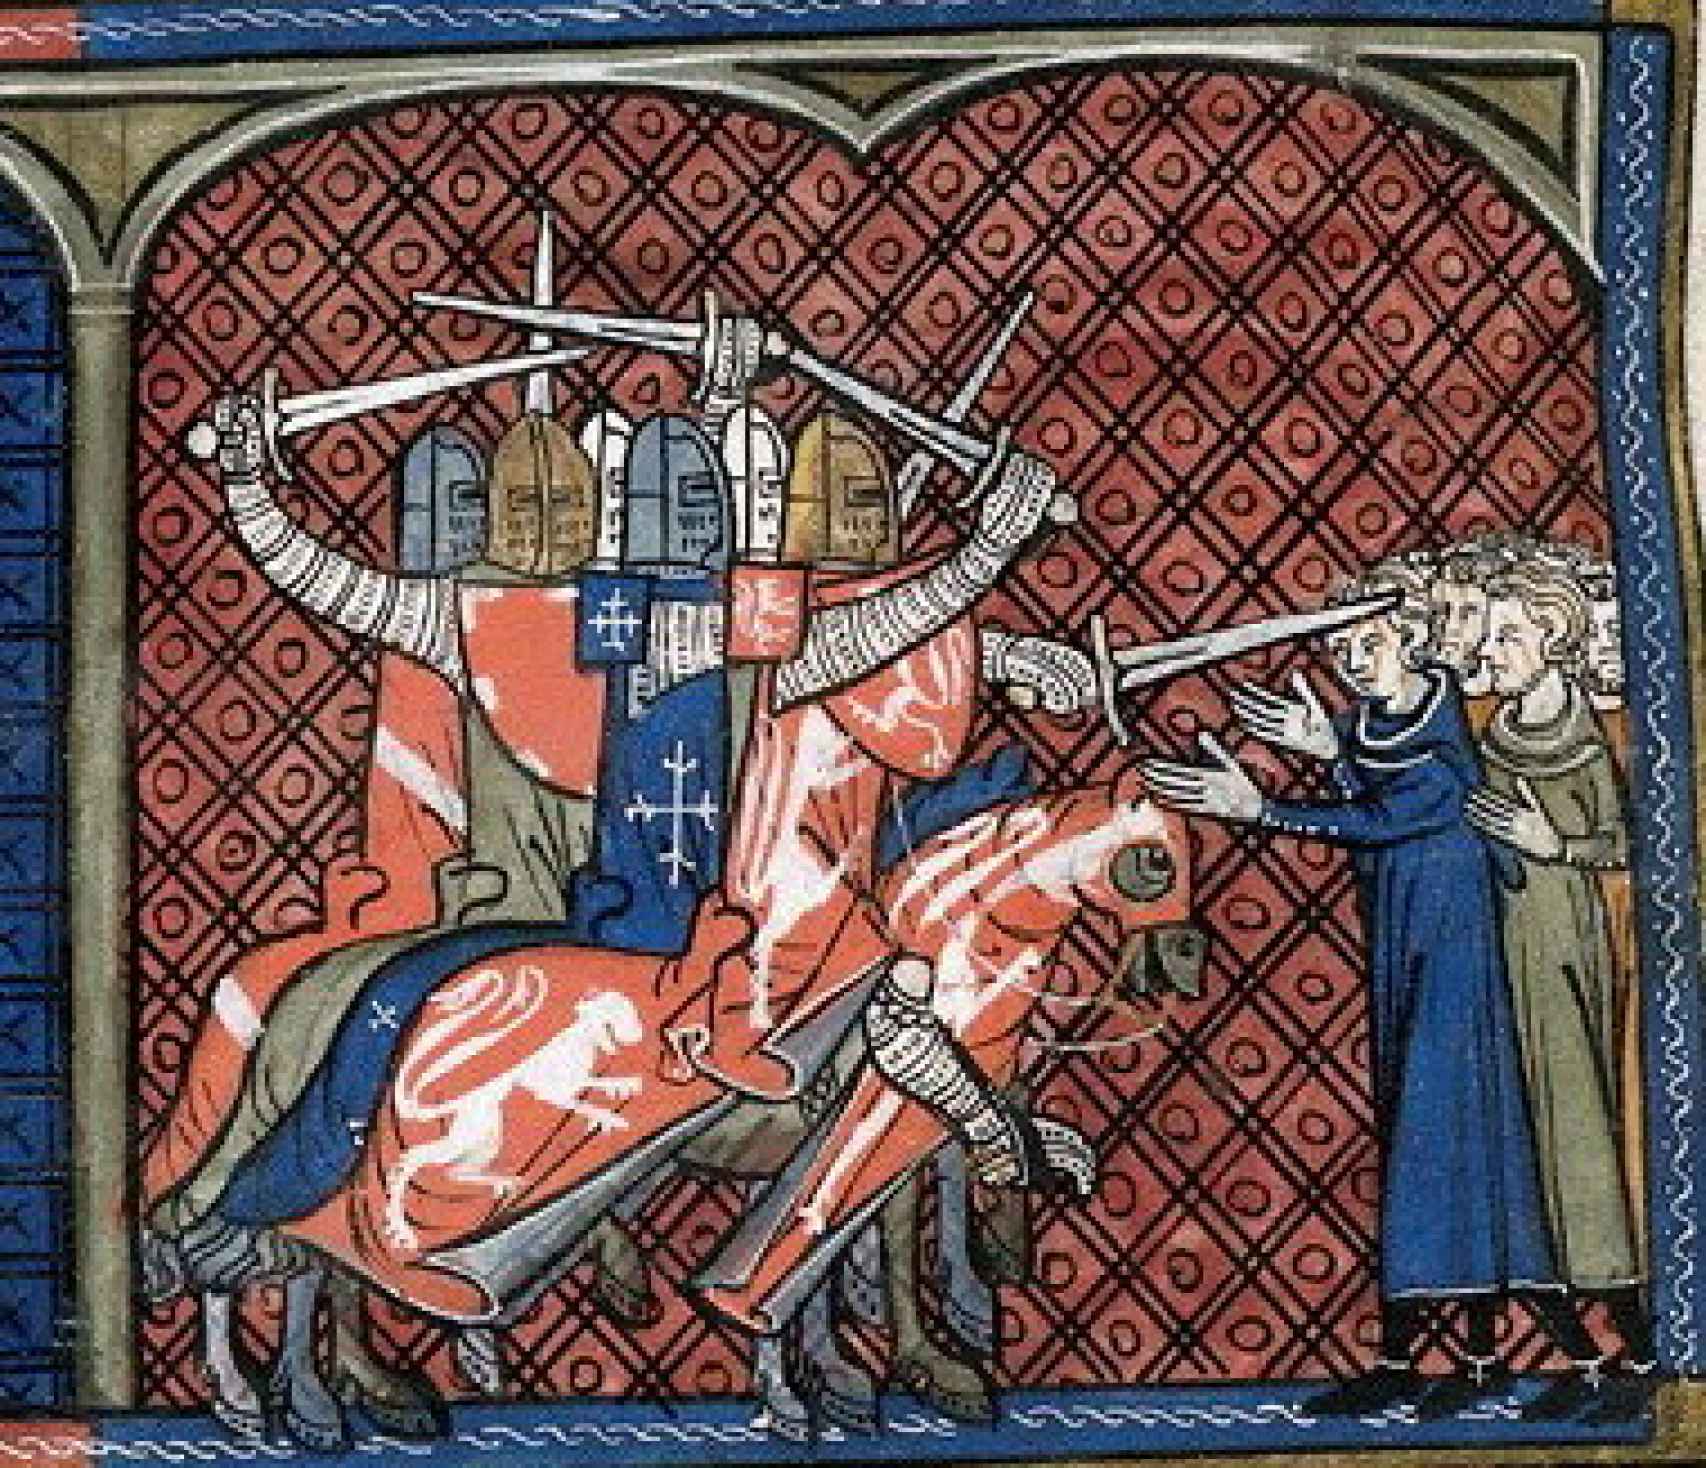 el rey de aragón que desafió al papa: defendió herejes y murió luchando contra los cruzados